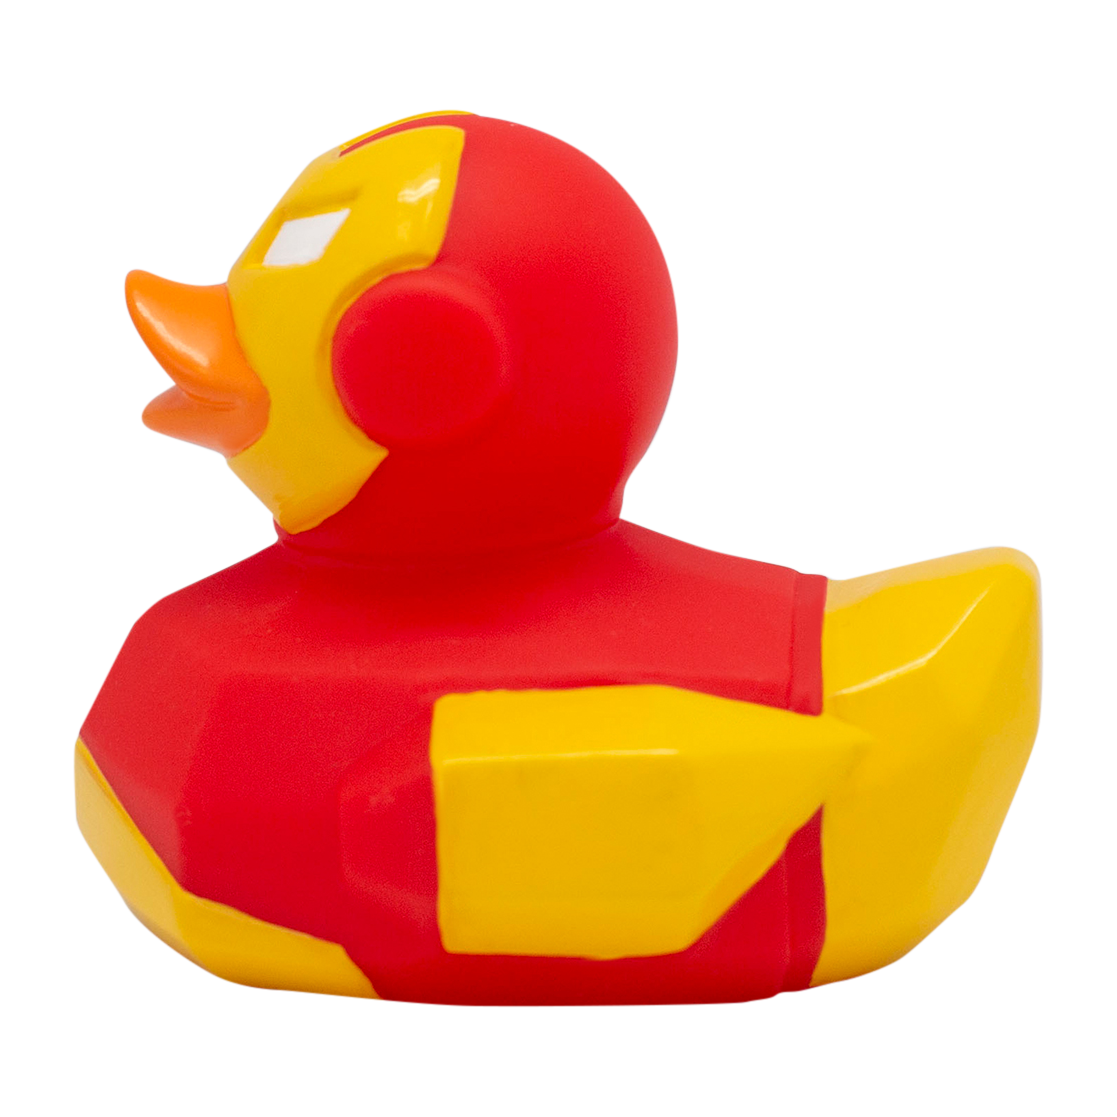 Iron Duck